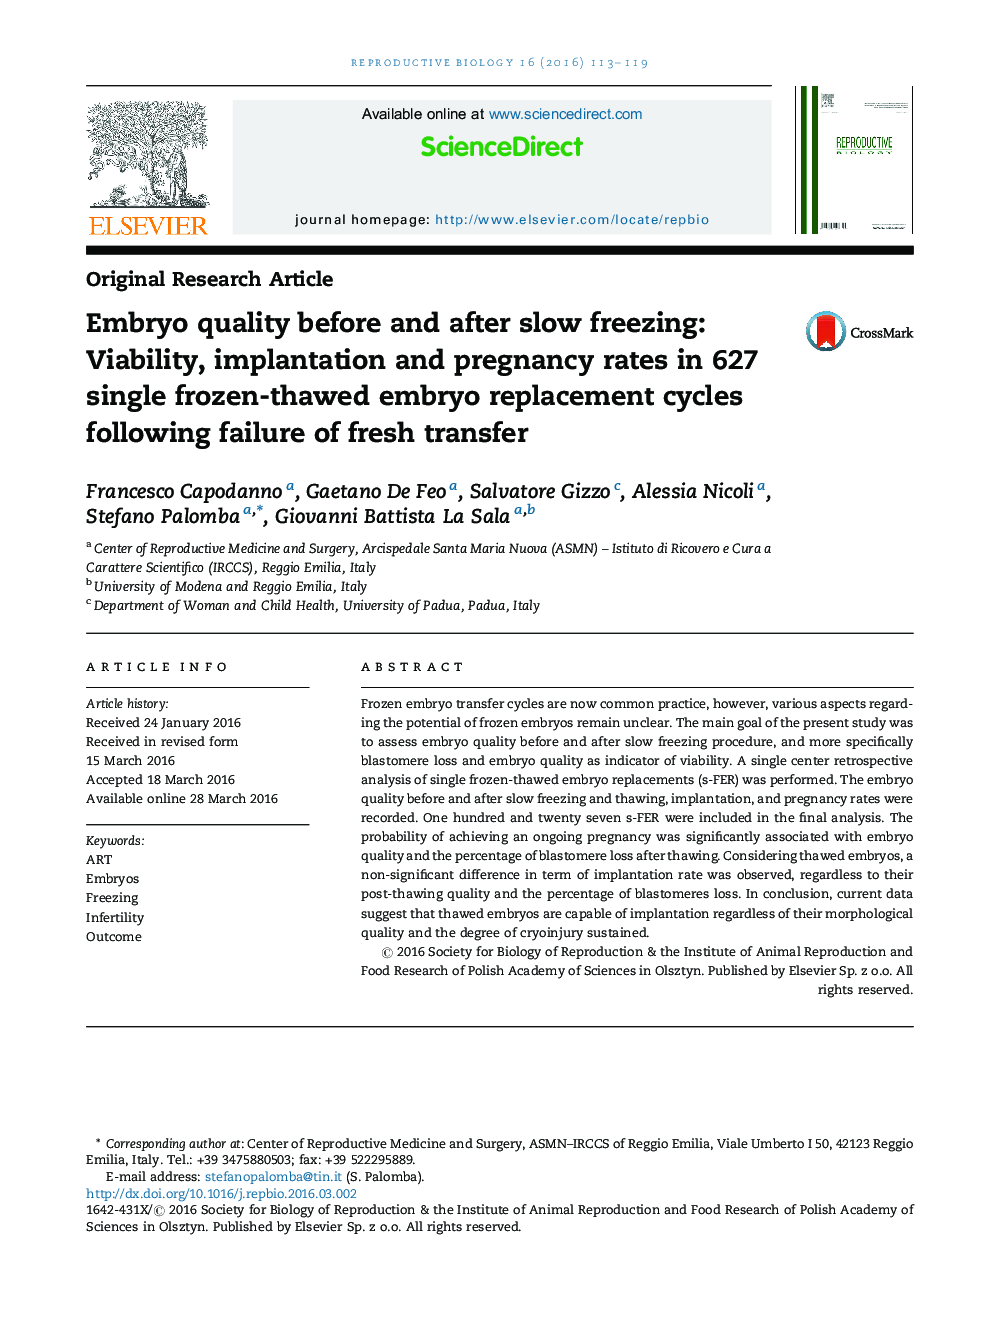 کیفیت جنین قبل و بعد از انجماد آهسته: نرخ زنده ماندن، لانه گزینی و حاملگی در 627 چرخه جایگزینی جنین منجمد تنها در پی ناکامی انتقال تازه